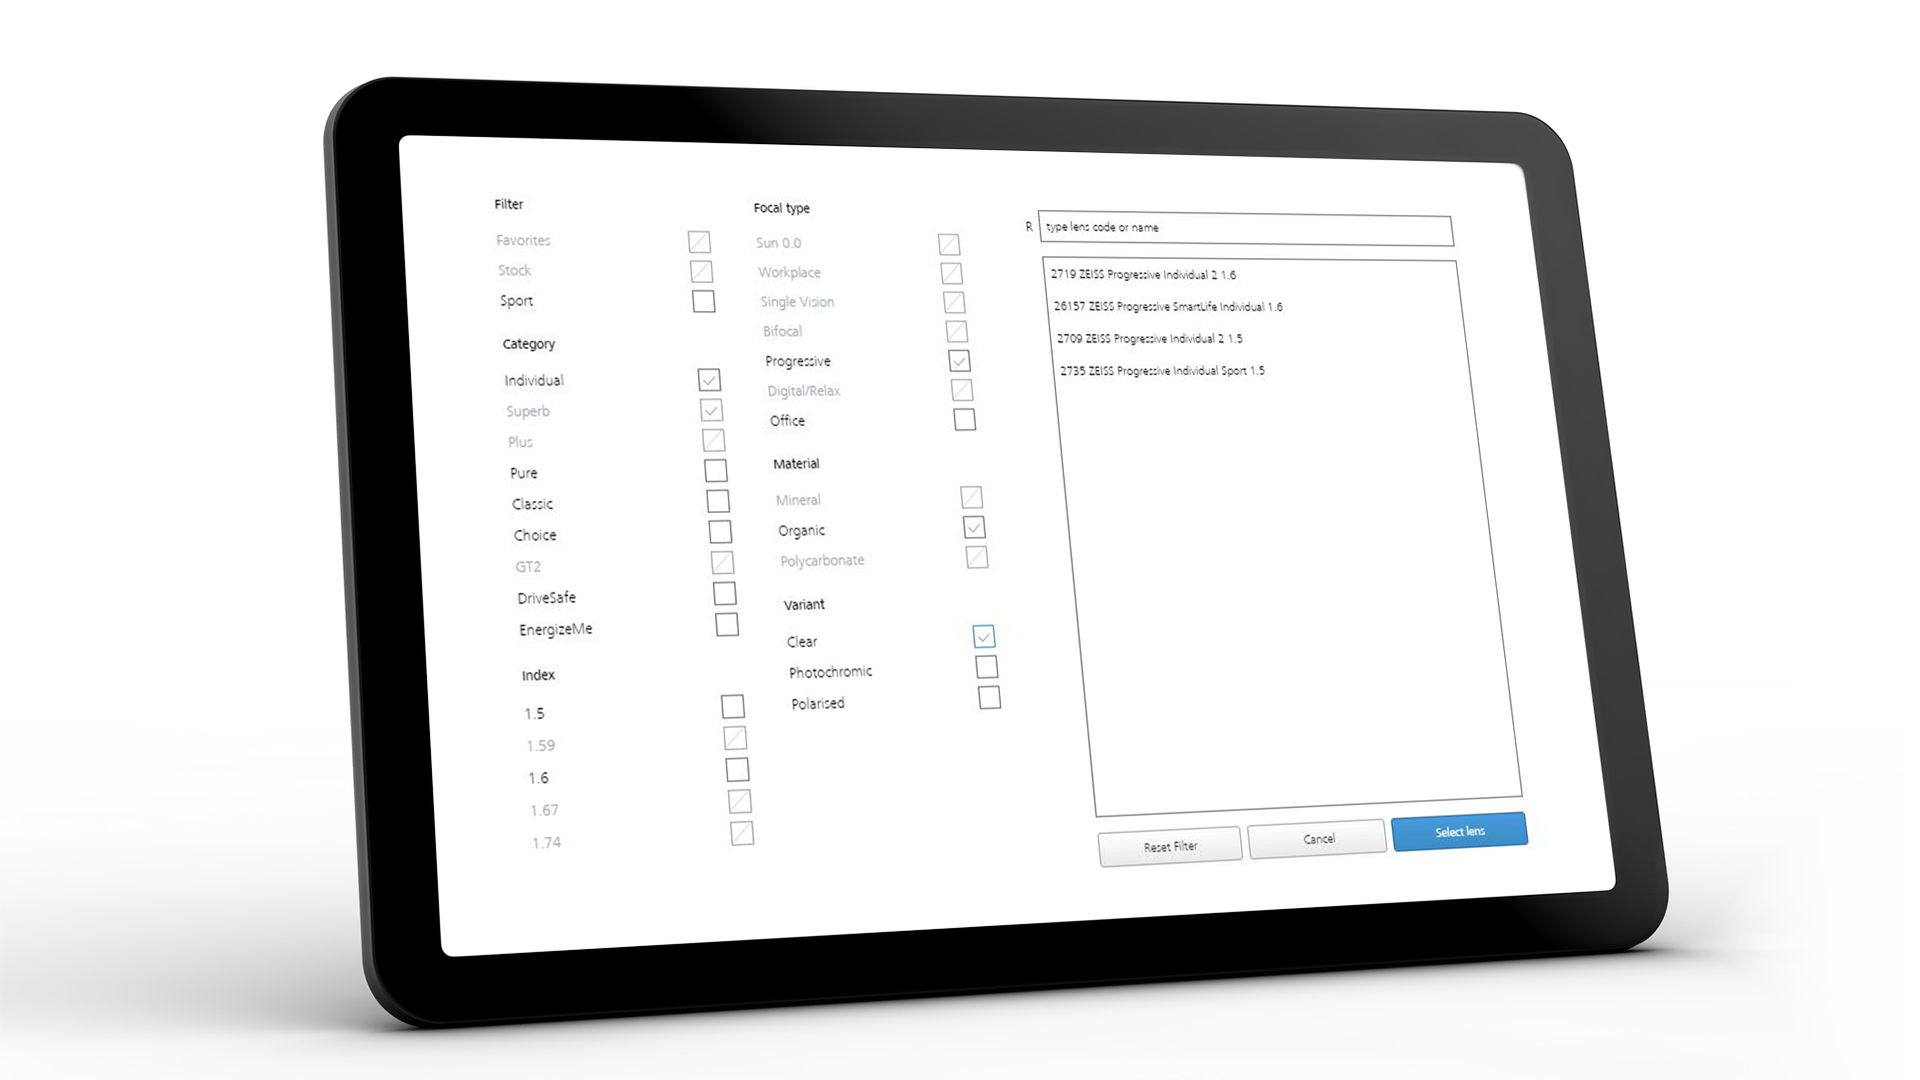 Tablet skærmbillede, som viser ZEISS VISUSTORE-brugergrænsefladen med forskellige inputværktøjer 